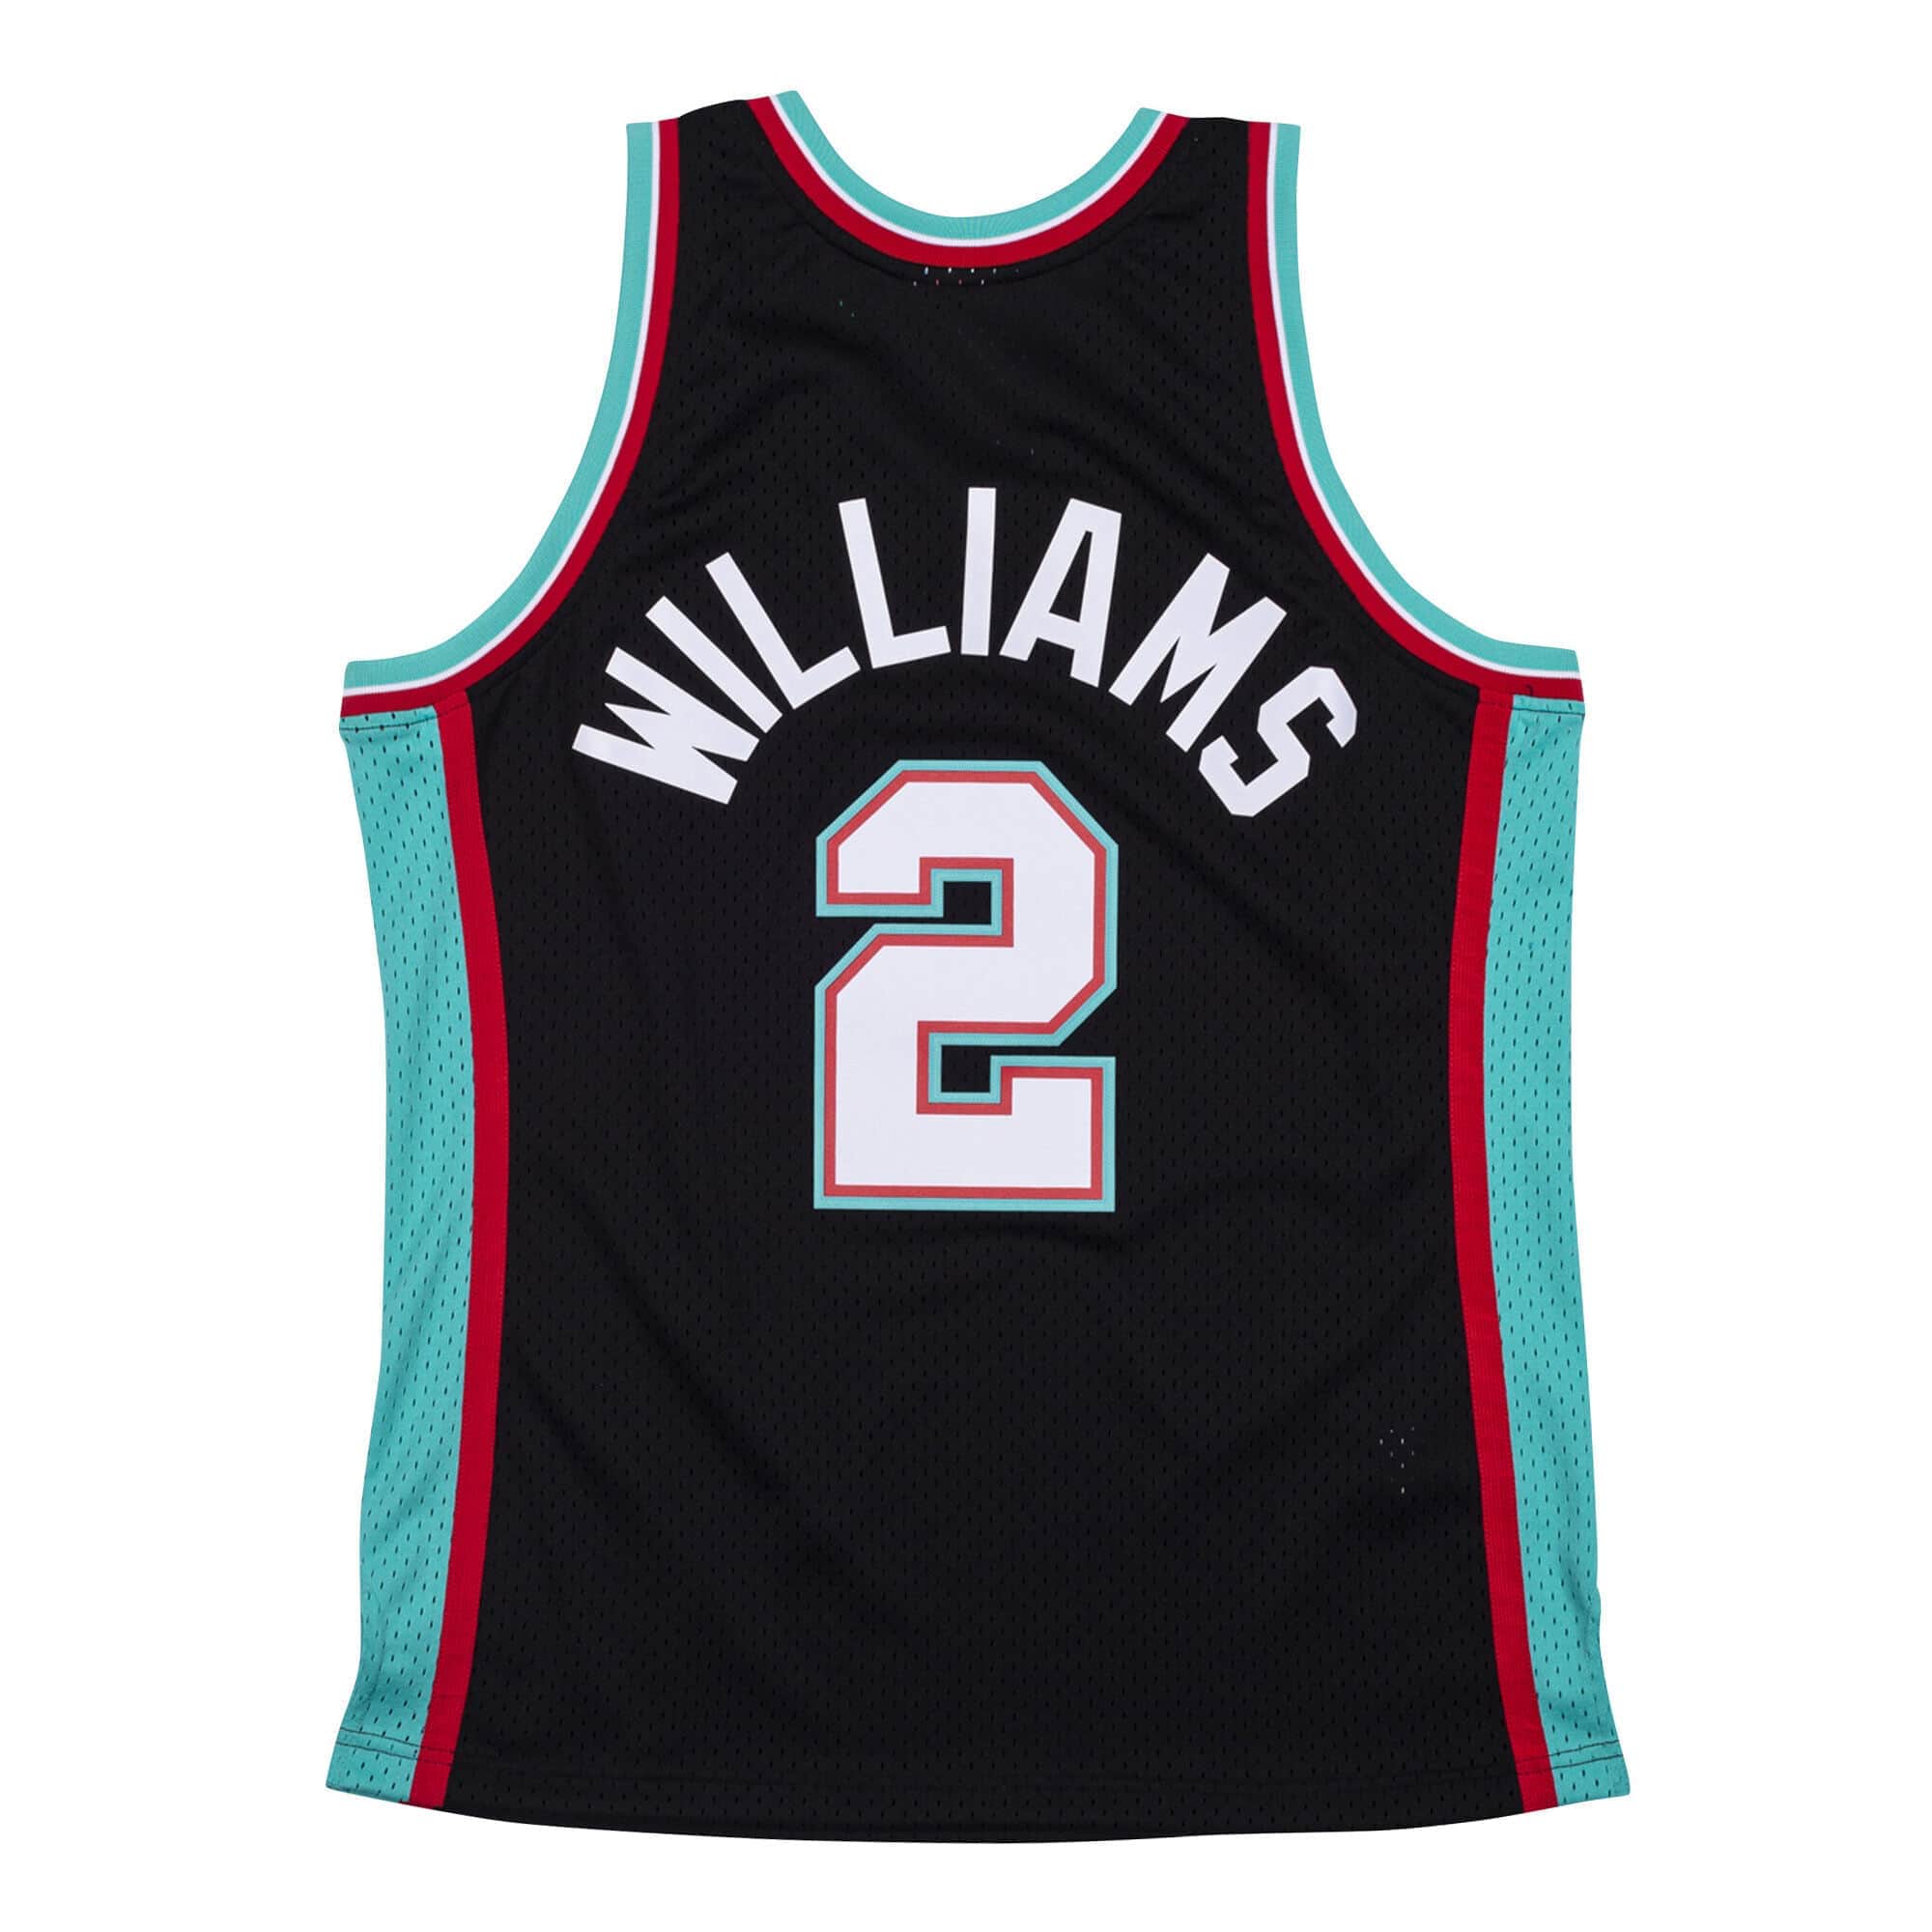 Jason Williams Sacramento Kings Black Adidas Swingman Jersey New tags